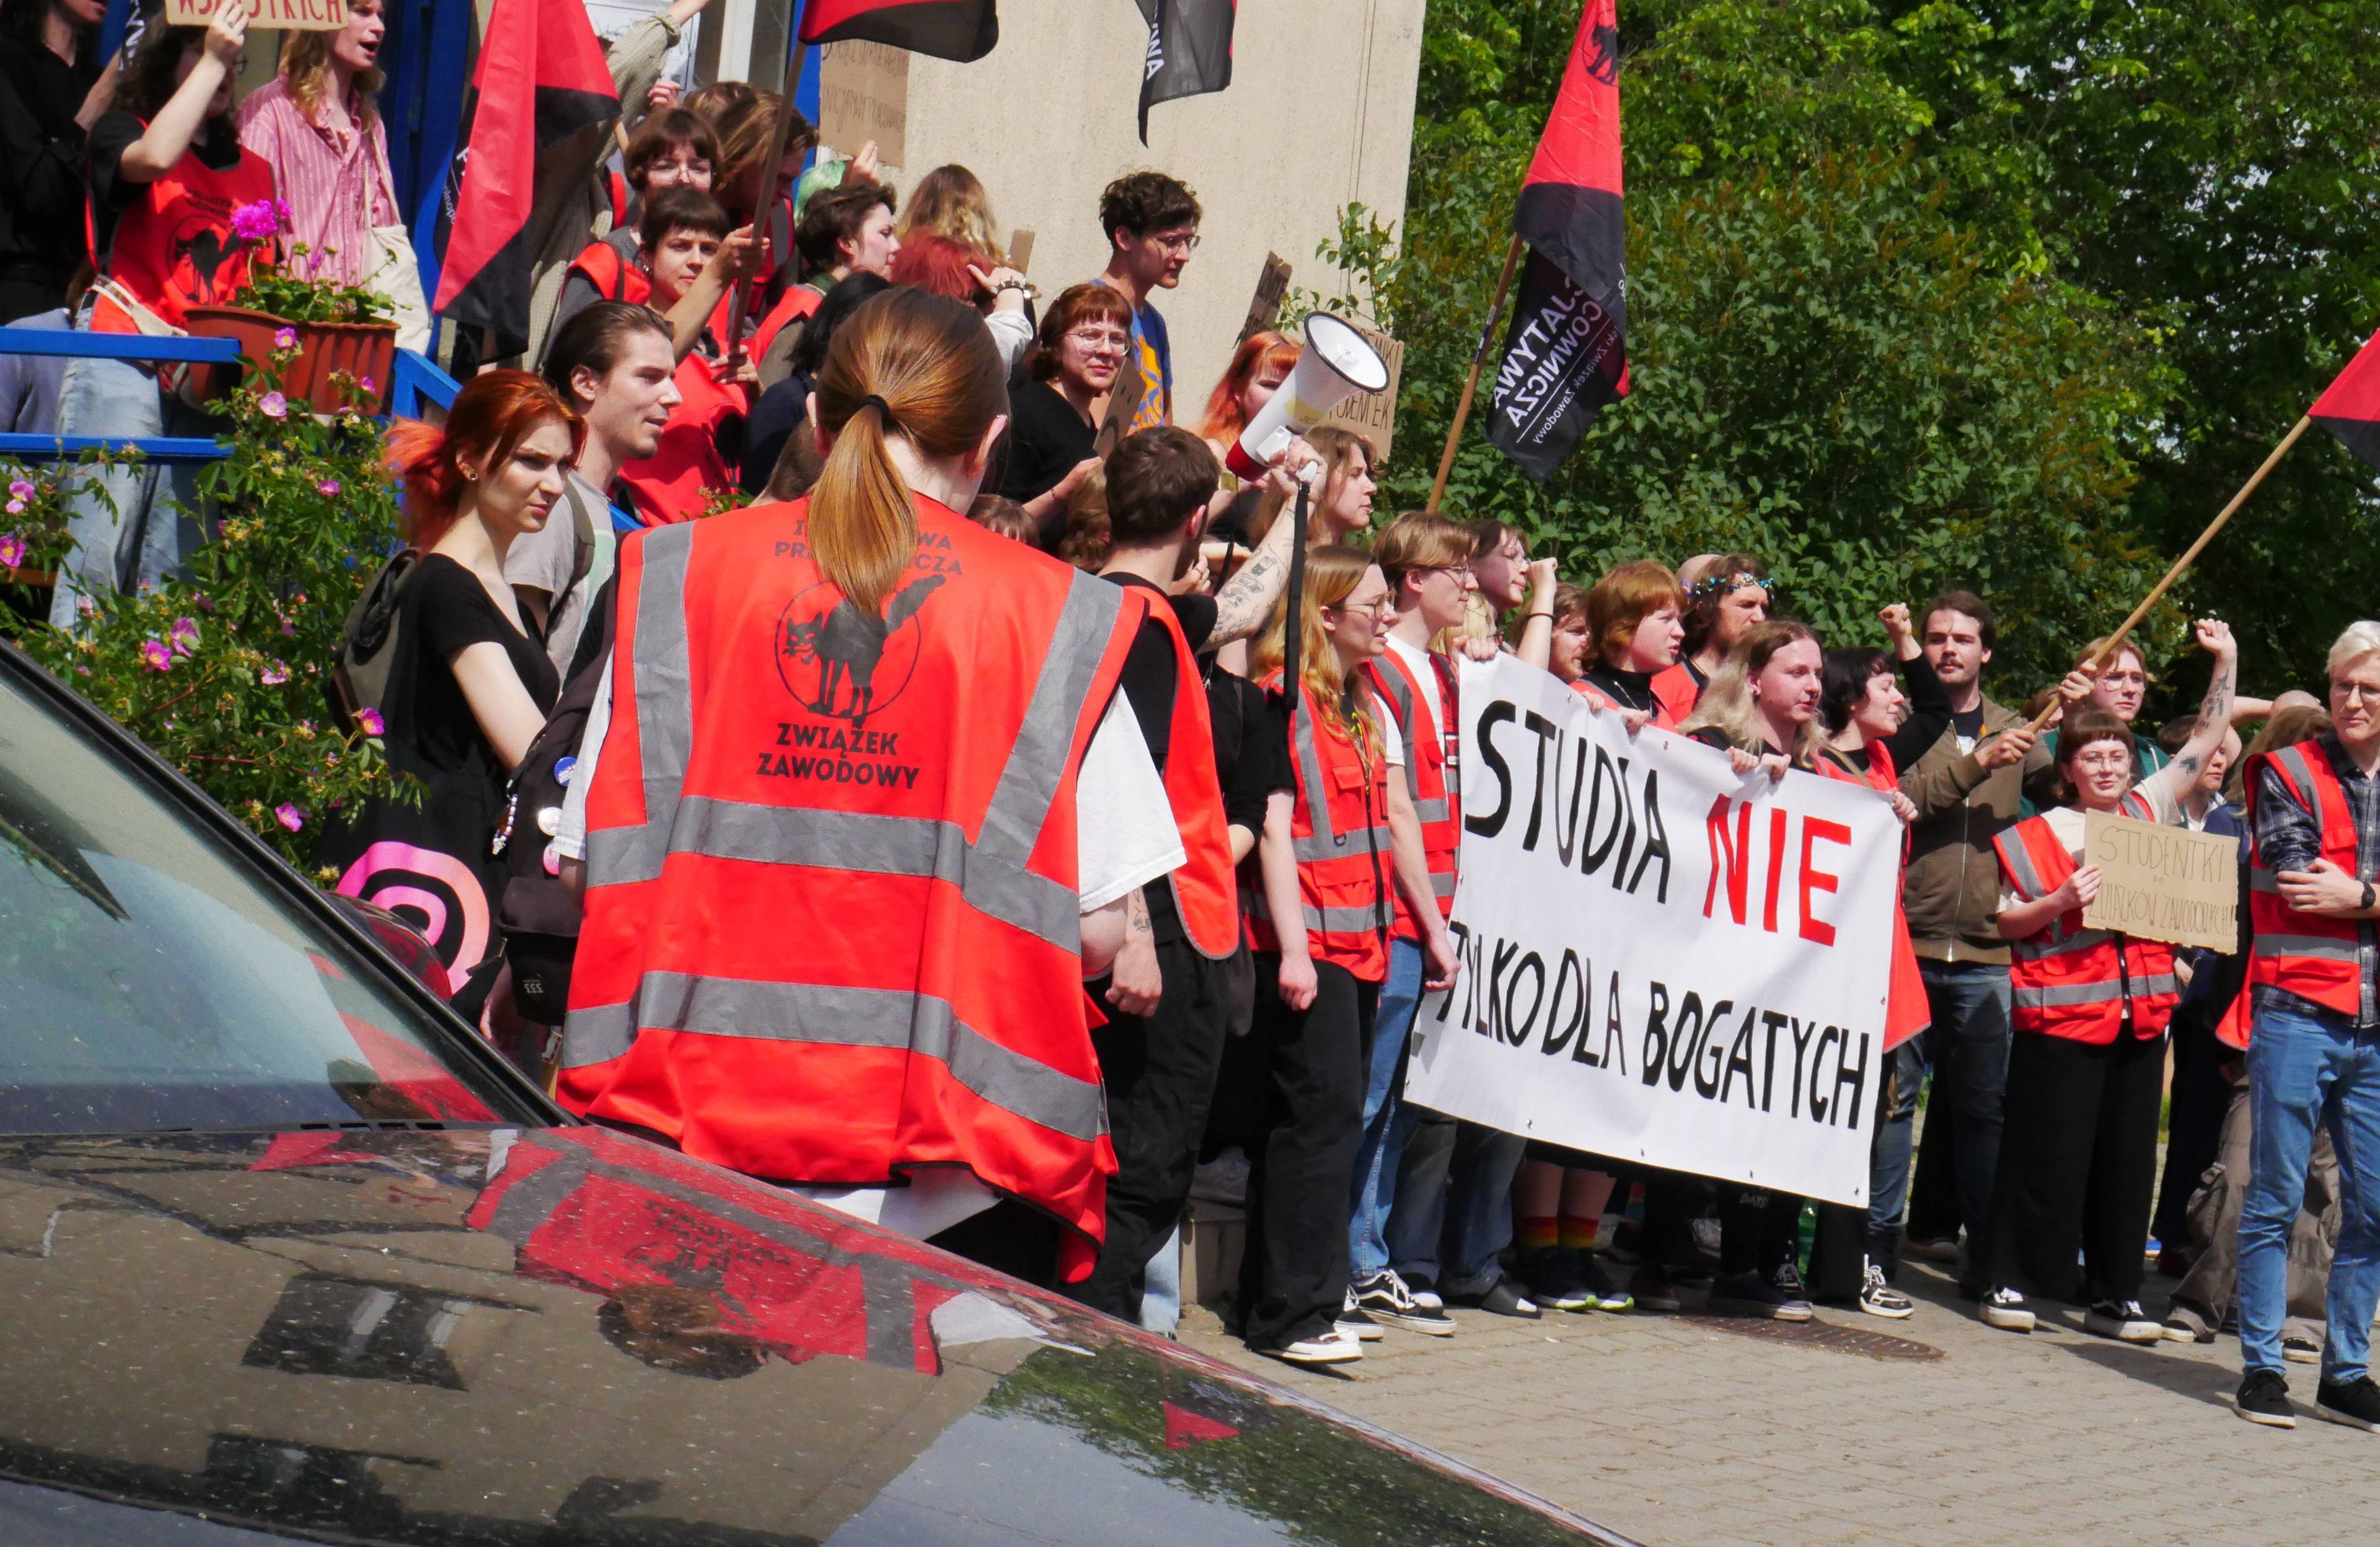 studenci protestujący przed budynkiem akademika w czerwonych kamizelkach. baner z napisem "studia nie tylko dla bogatych"